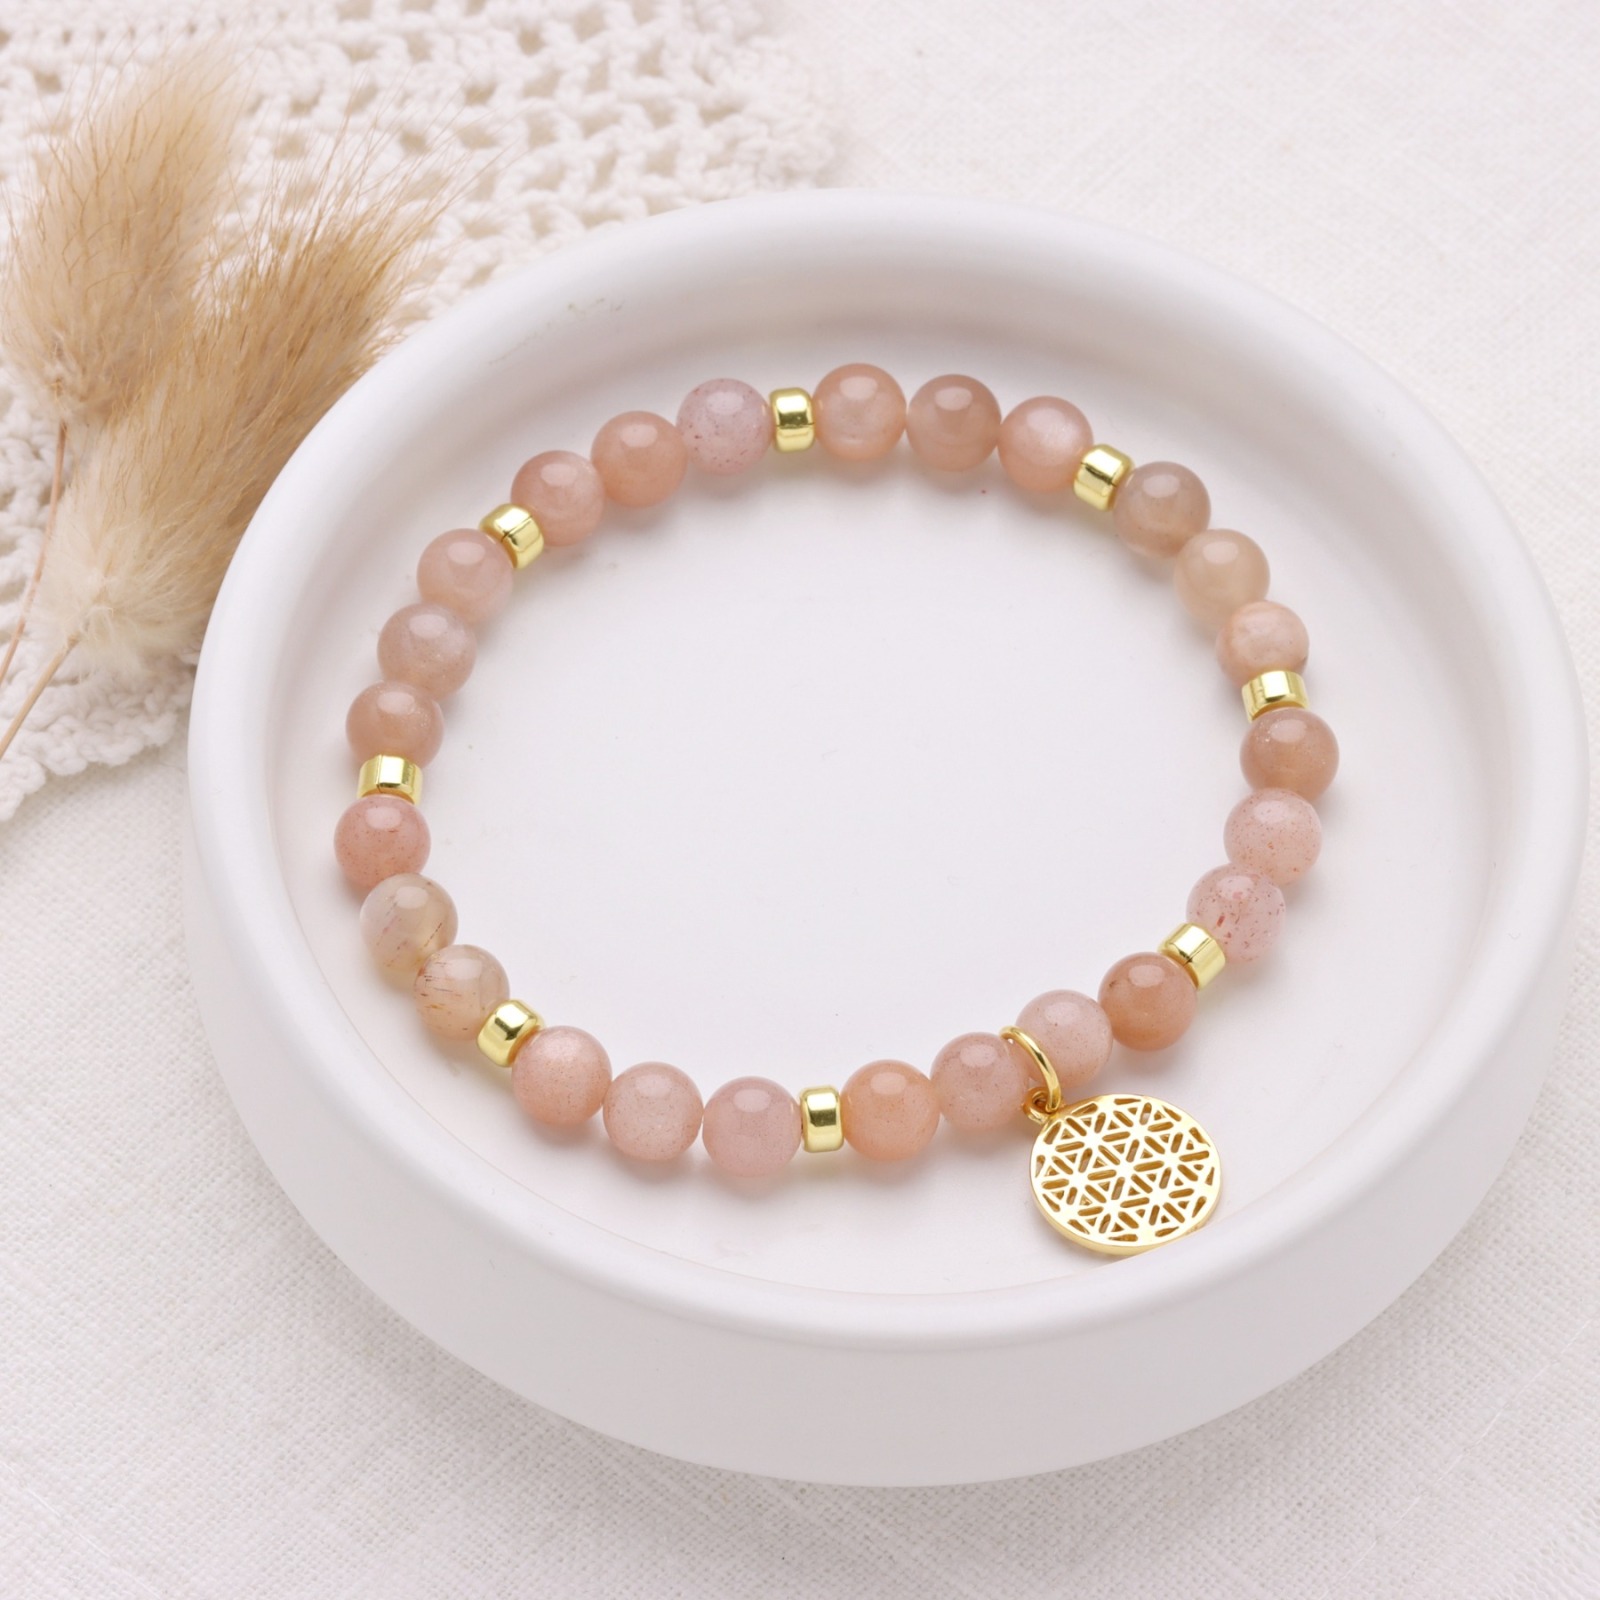 Lebensblume Armband aus Mondstein rosè-beige, 925 Silber oder vergoldet, perfektes Geschenk für